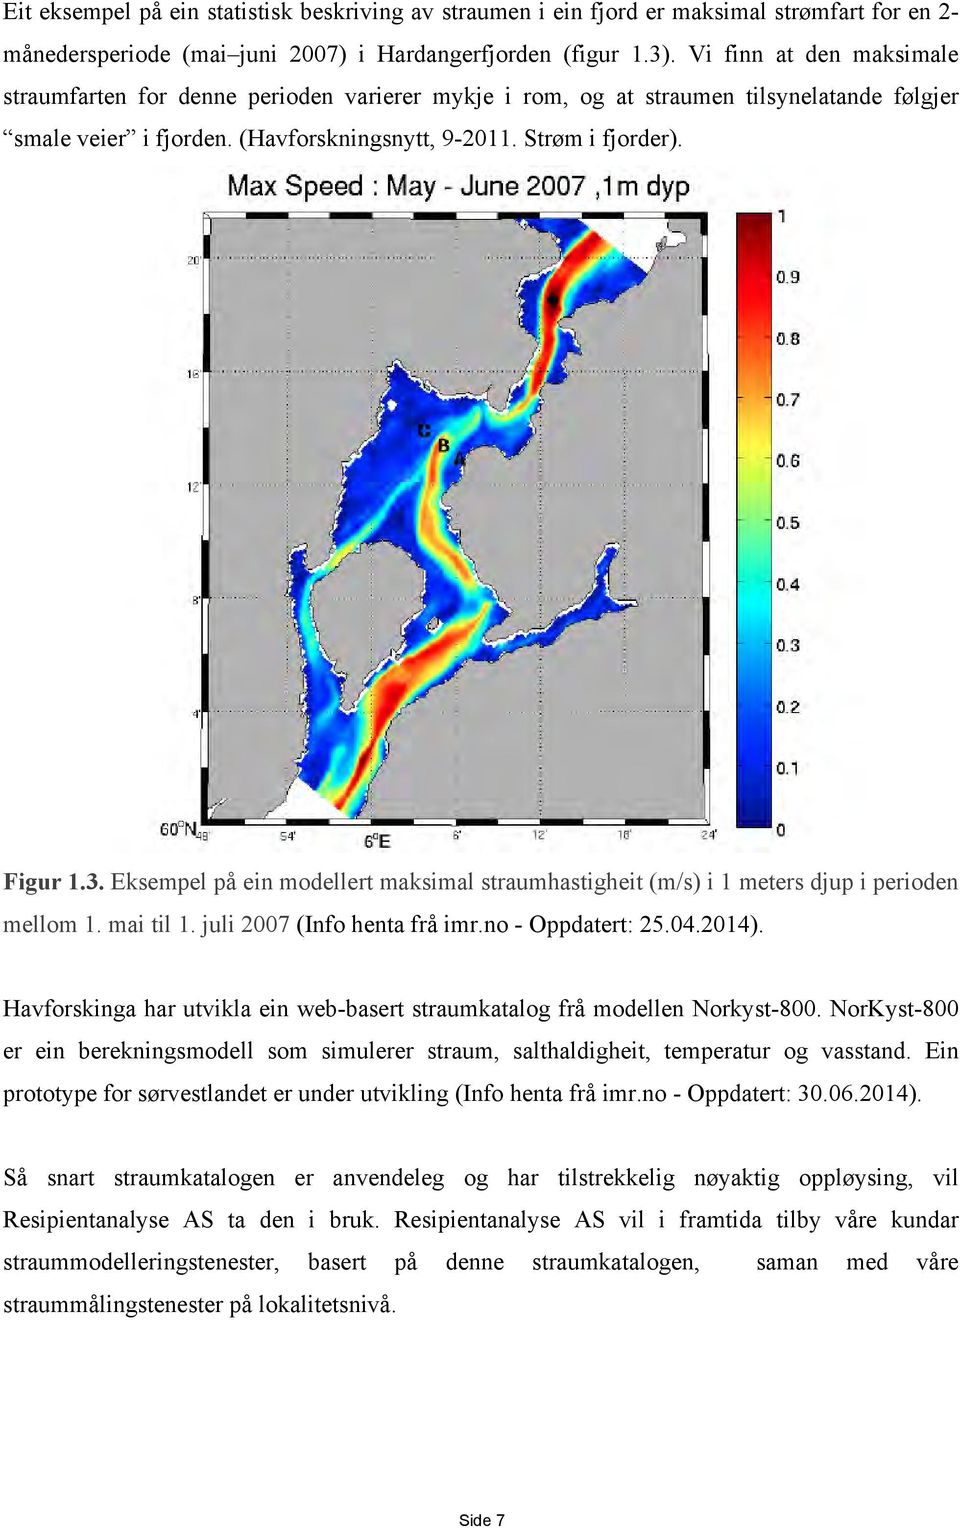 Eksempel på ein modellert maksimal straumhastigheit (m/s) i 1 meters djup i perioden mellom 1. mai til 1. juli 2007 (Info henta frå imr.no - Oppdatert: 25.04.2014).